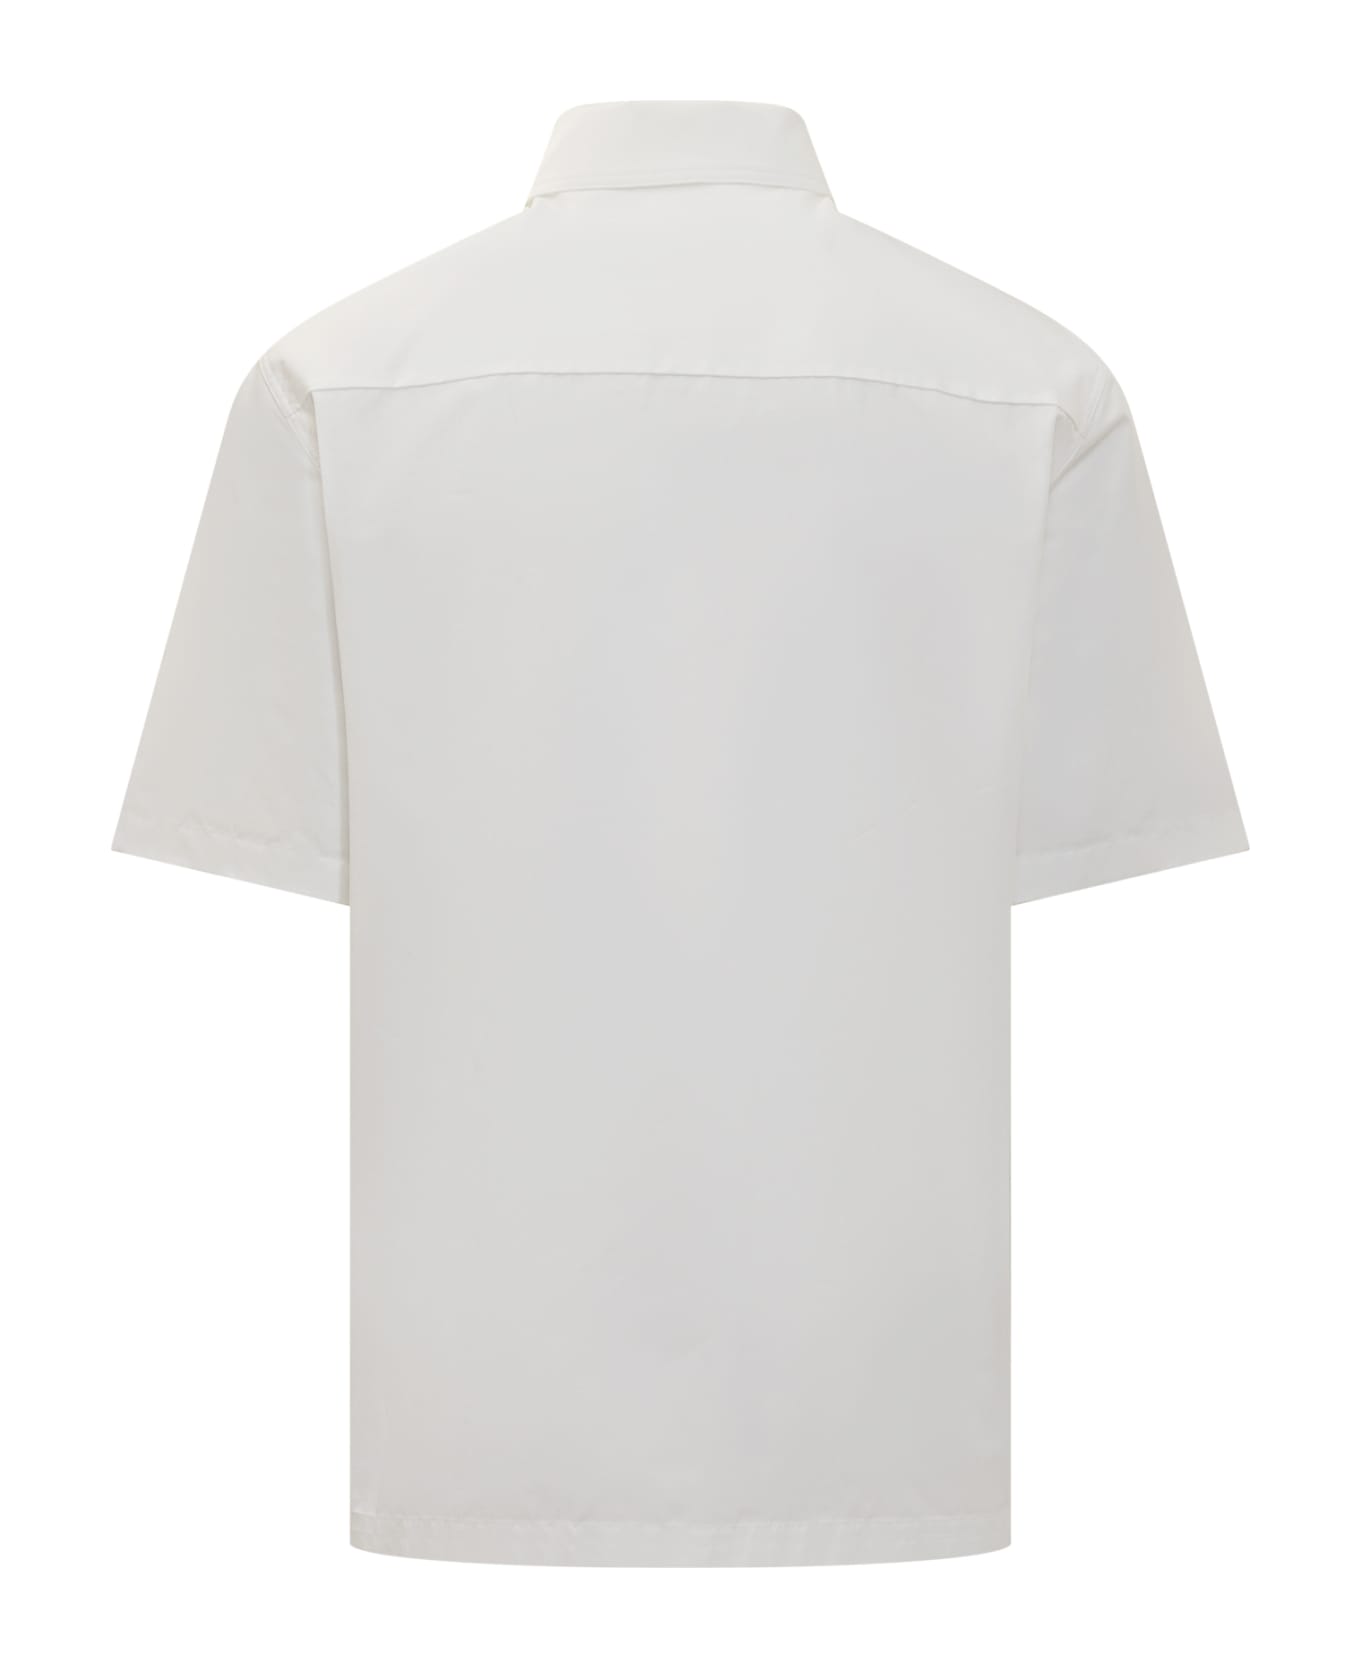 Jil Sander 64 Shirt - WHITE